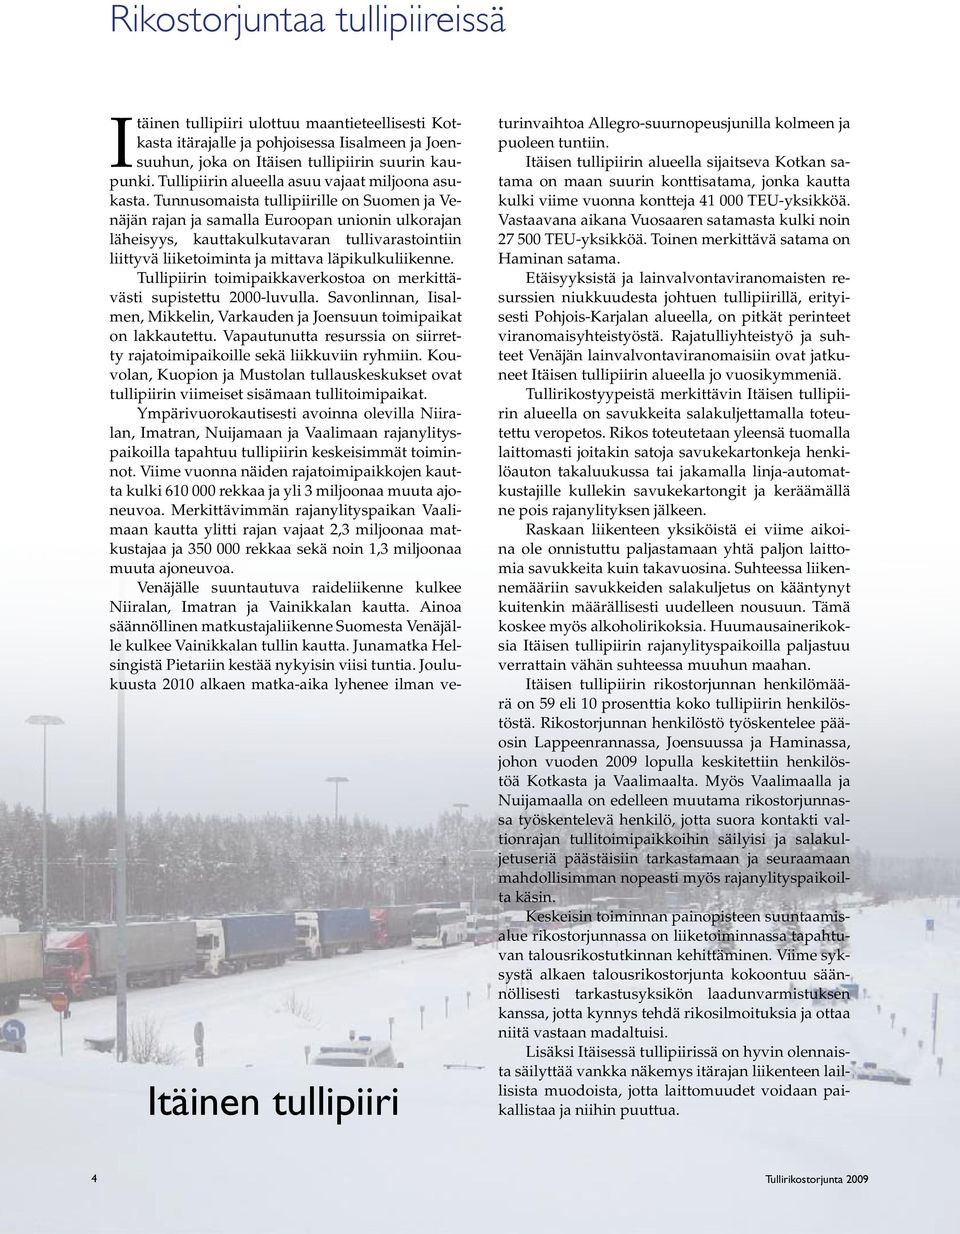 Tunnusomaista tullipiirille on Suomen ja Venäjän rajan ja samalla Euroopan unionin ulkorajan läheisyys, kauttakulkutavaran tullivarastointiin liittyvä liiketoiminta ja mittava läpikulkuliikenne.